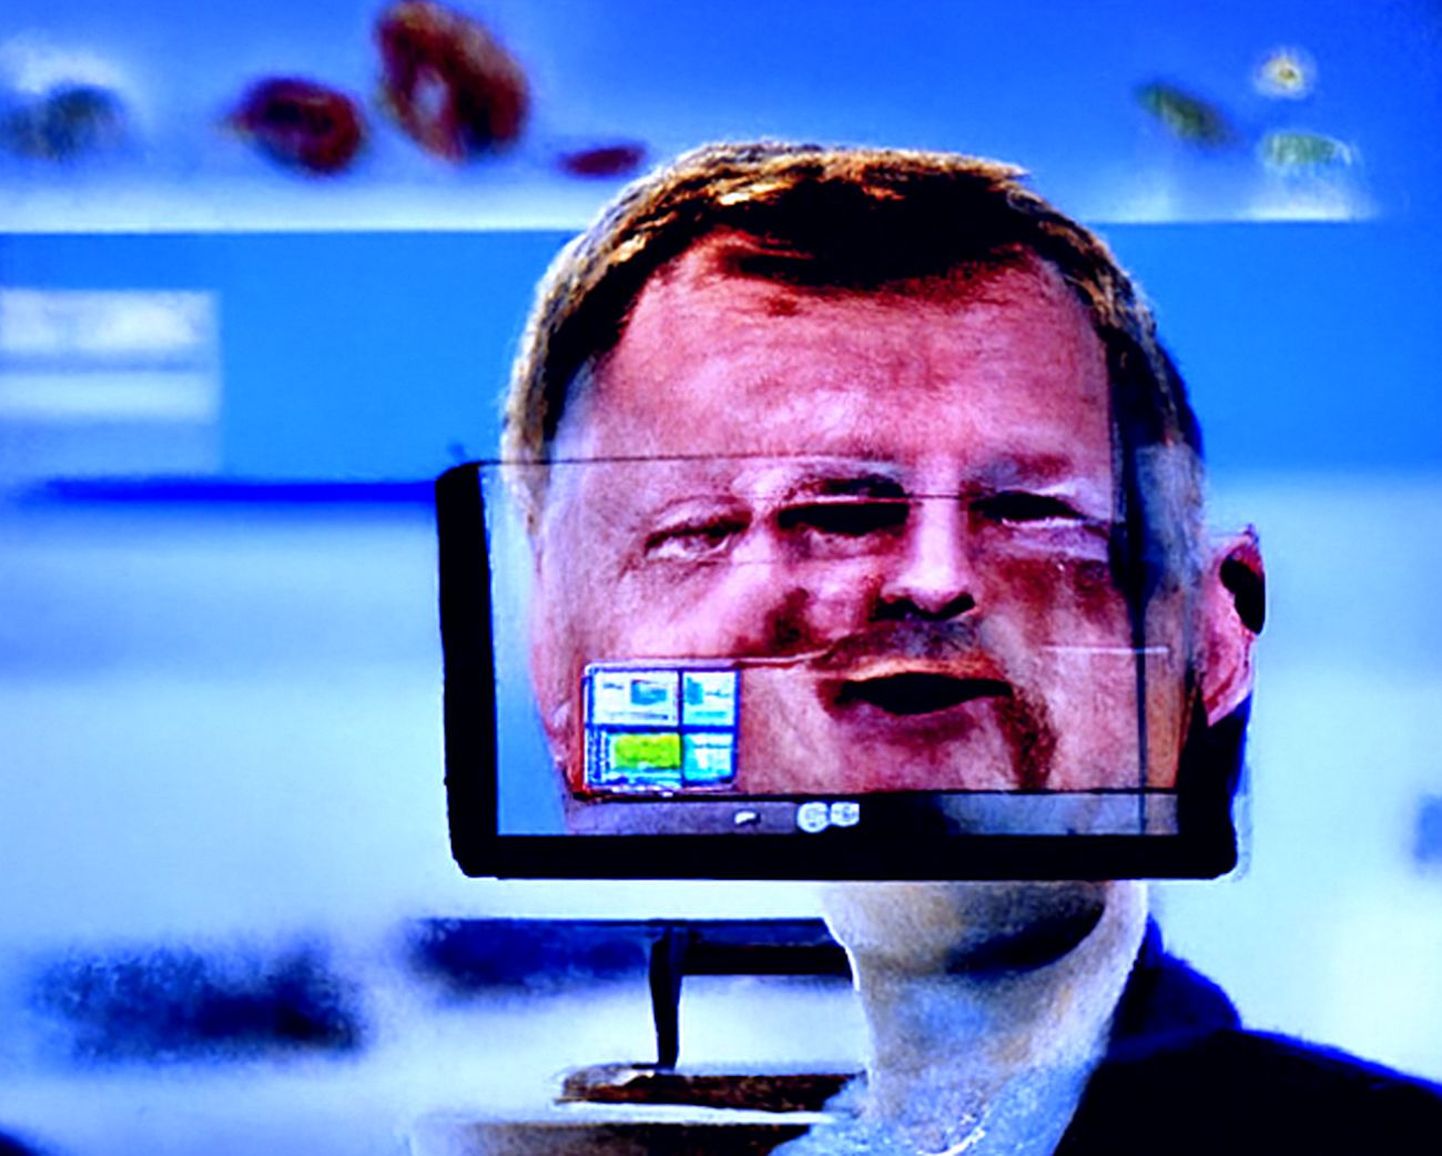 Sellisena kujutab end ette tulevane tehisintellekti juhitud poliitik Lars - kampaania on alanud, masin tahab saada Taani parlamenti.